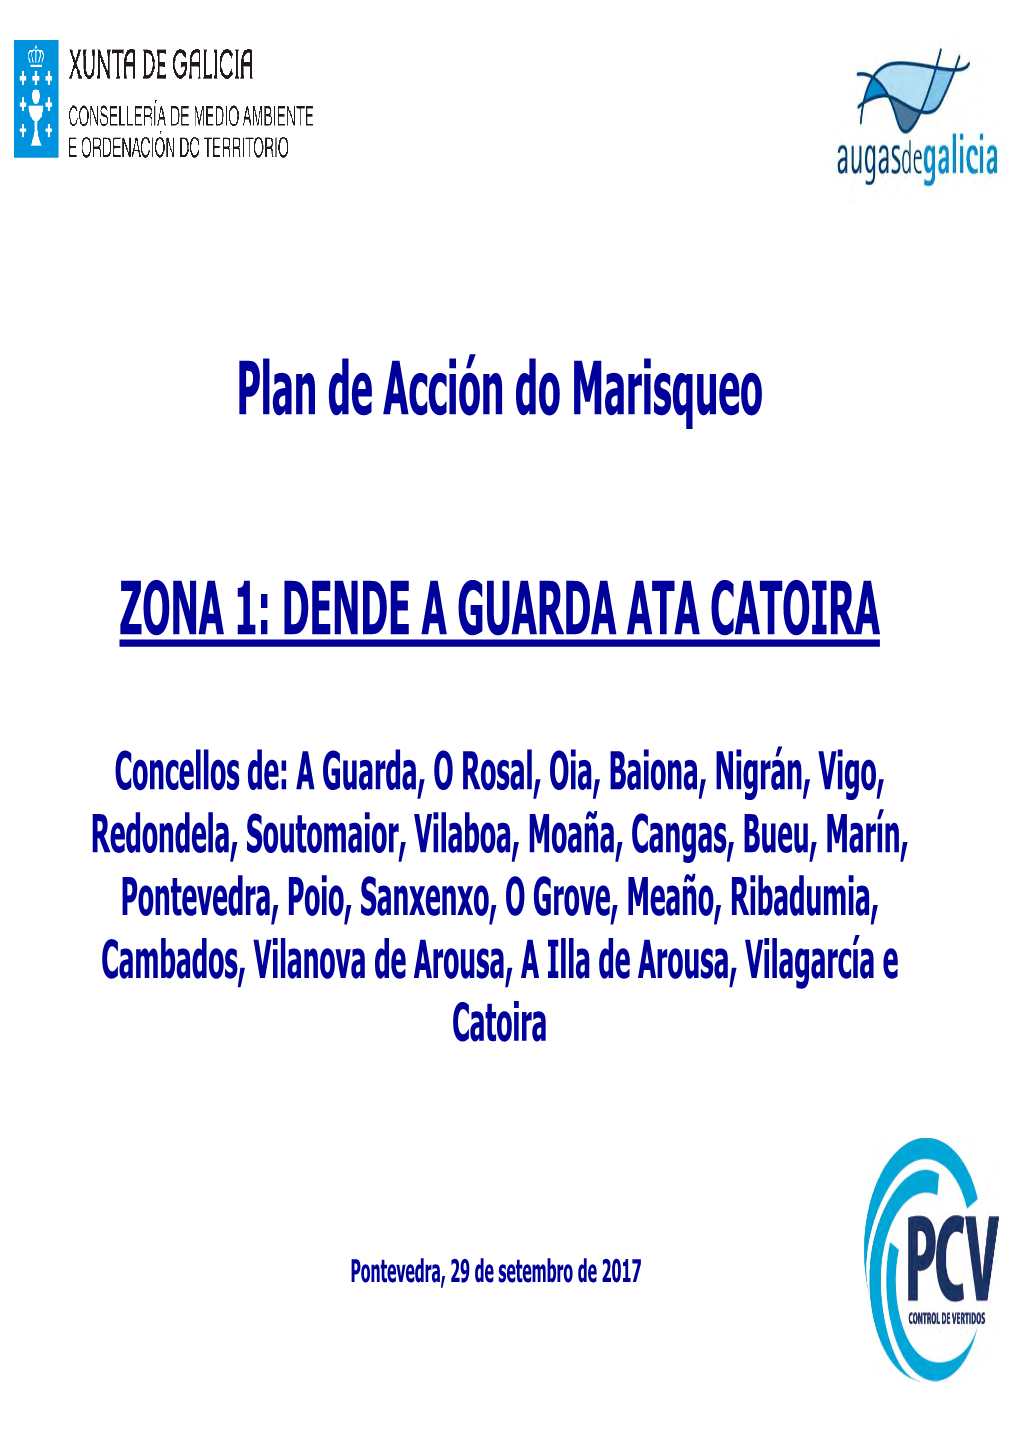 Plan De Acción Do Marisqueo ZONA 1: Dende a Guarda Ata Catoira